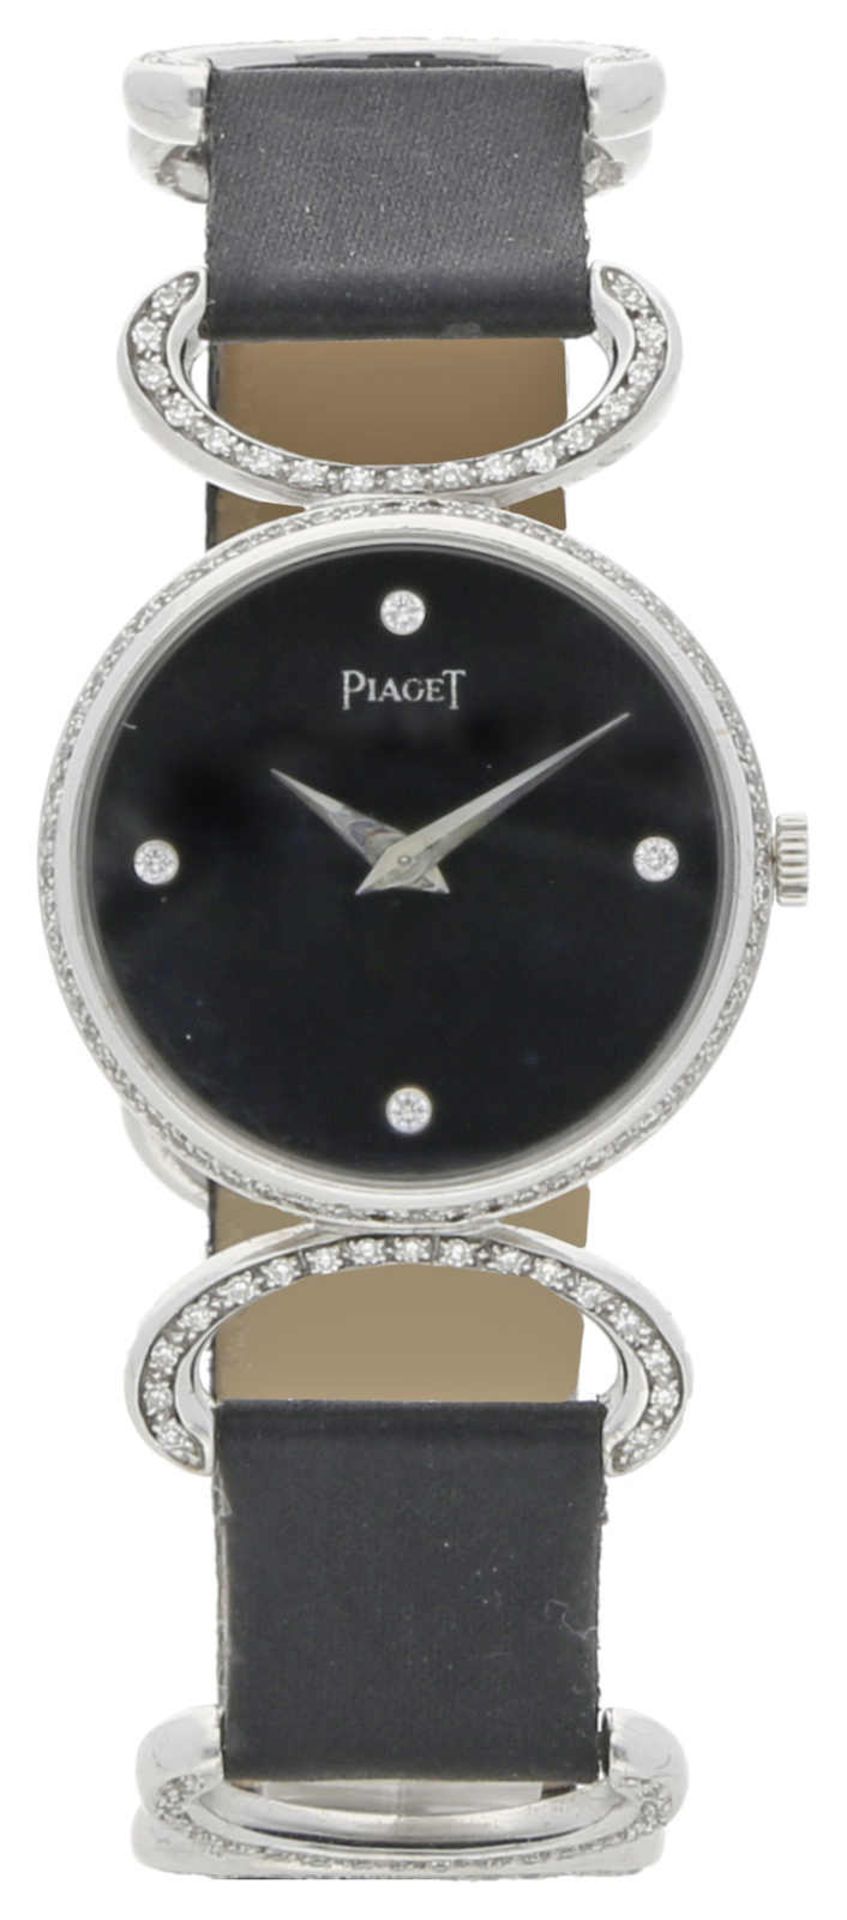 Armband- und Taschenuhren, Armbanduhren, Piaget